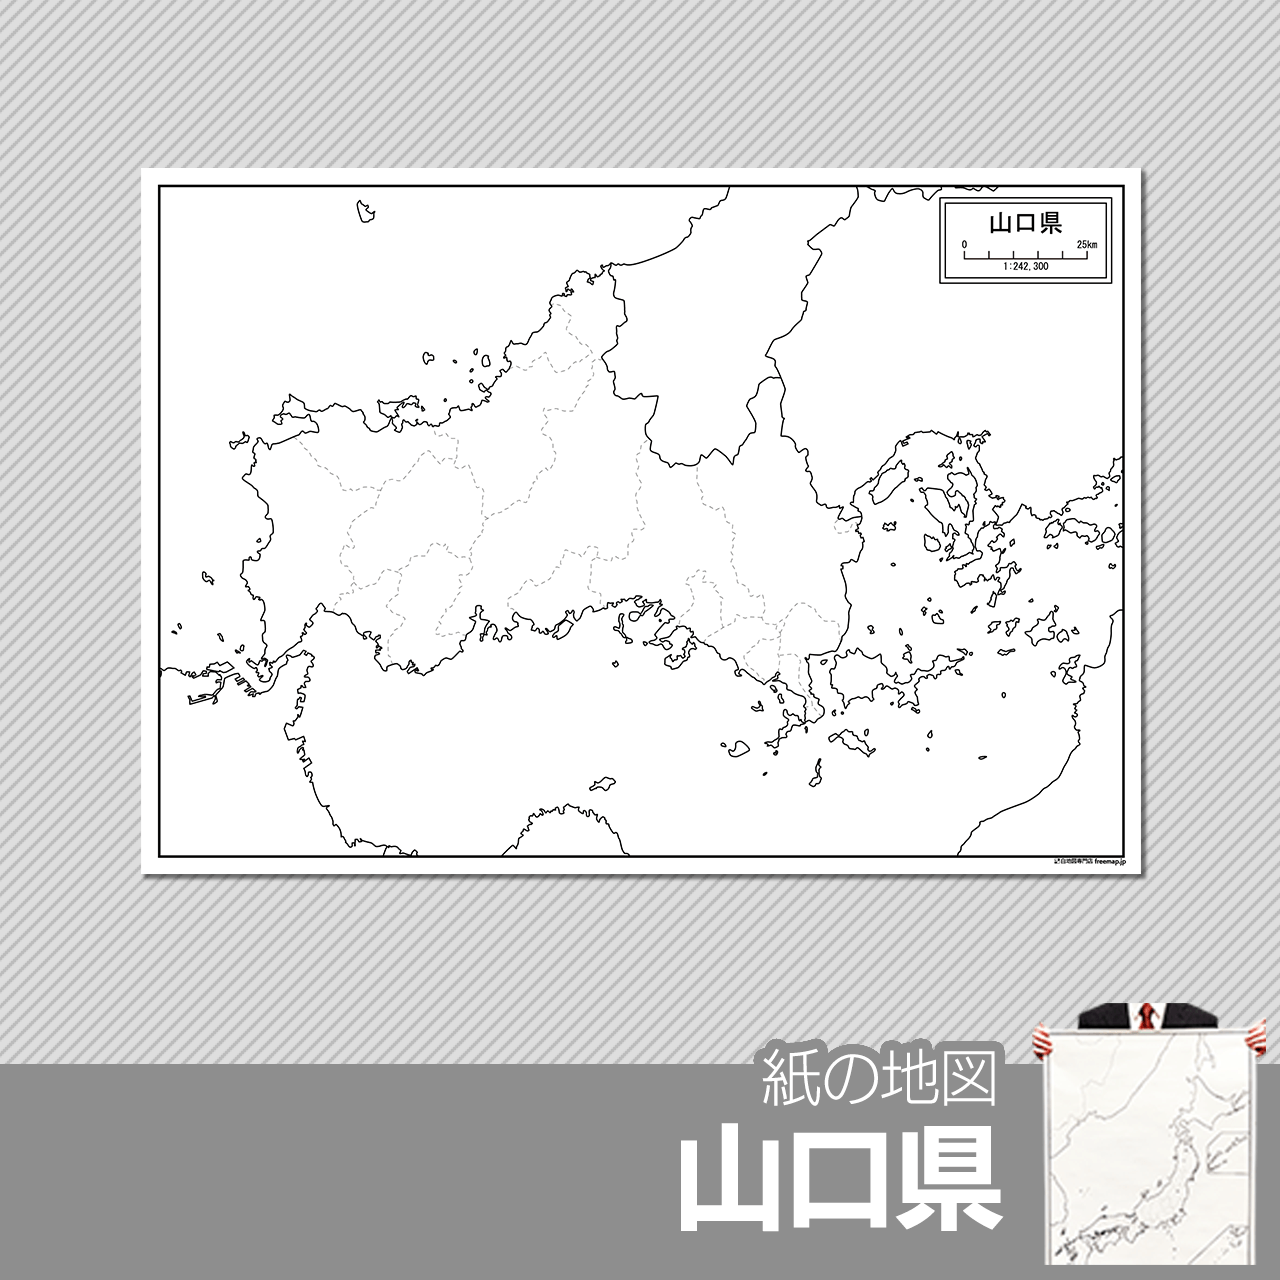 山口県の紙の白地図のサムネイル